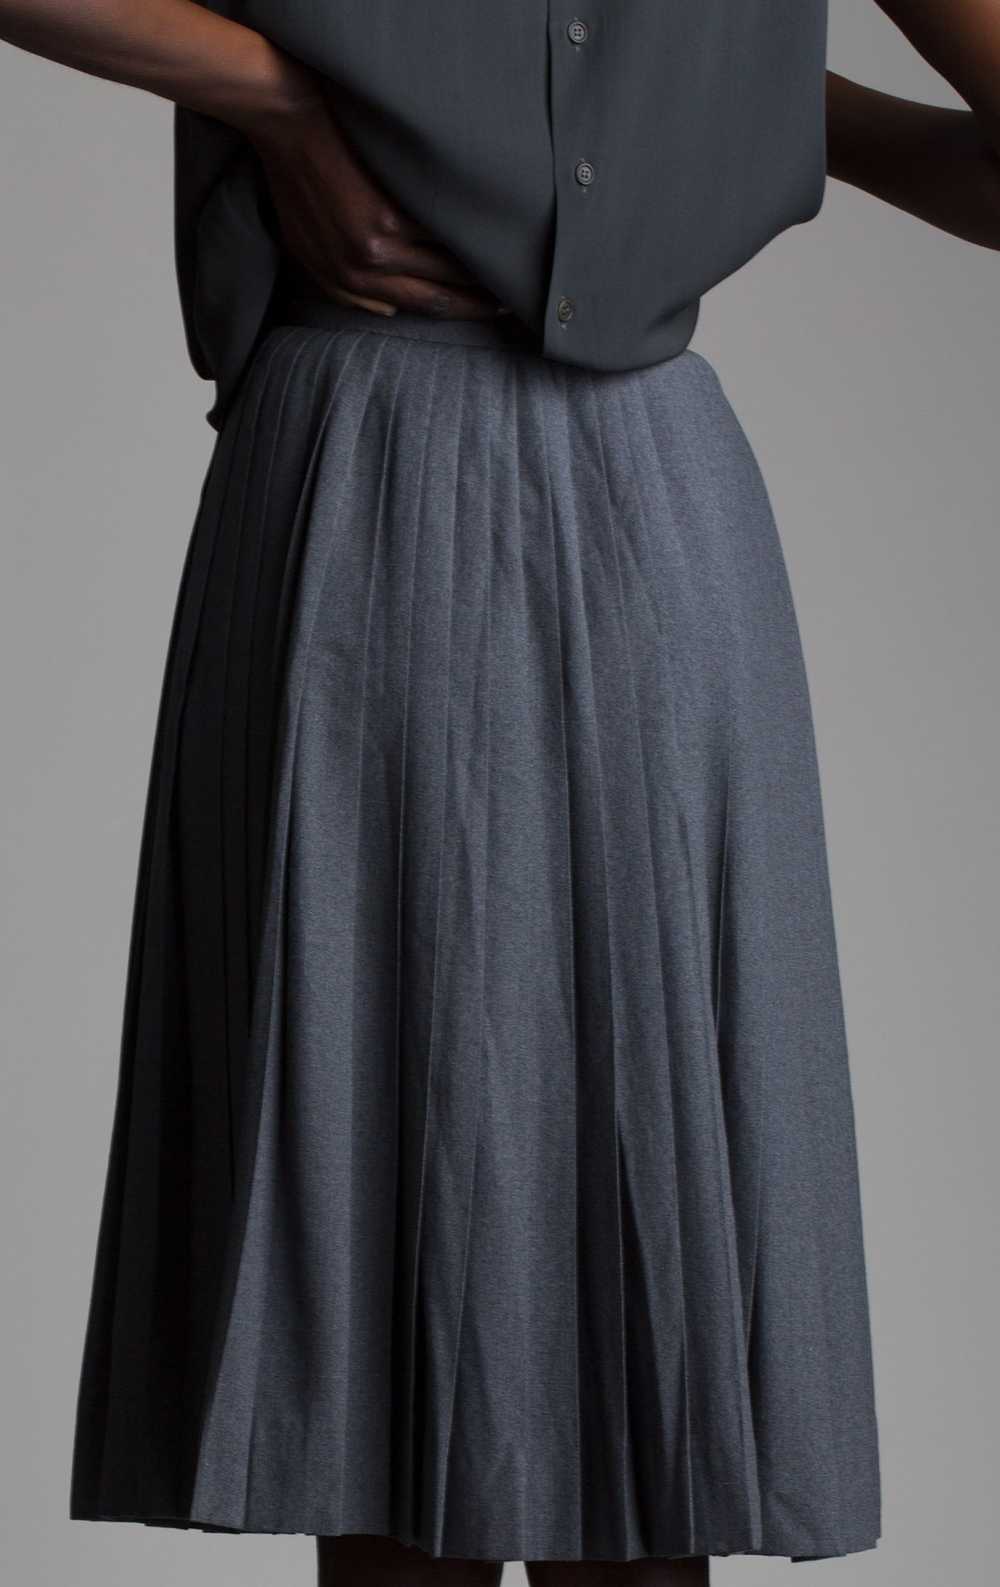 Vintage Pleated Wool Skirt - image 2